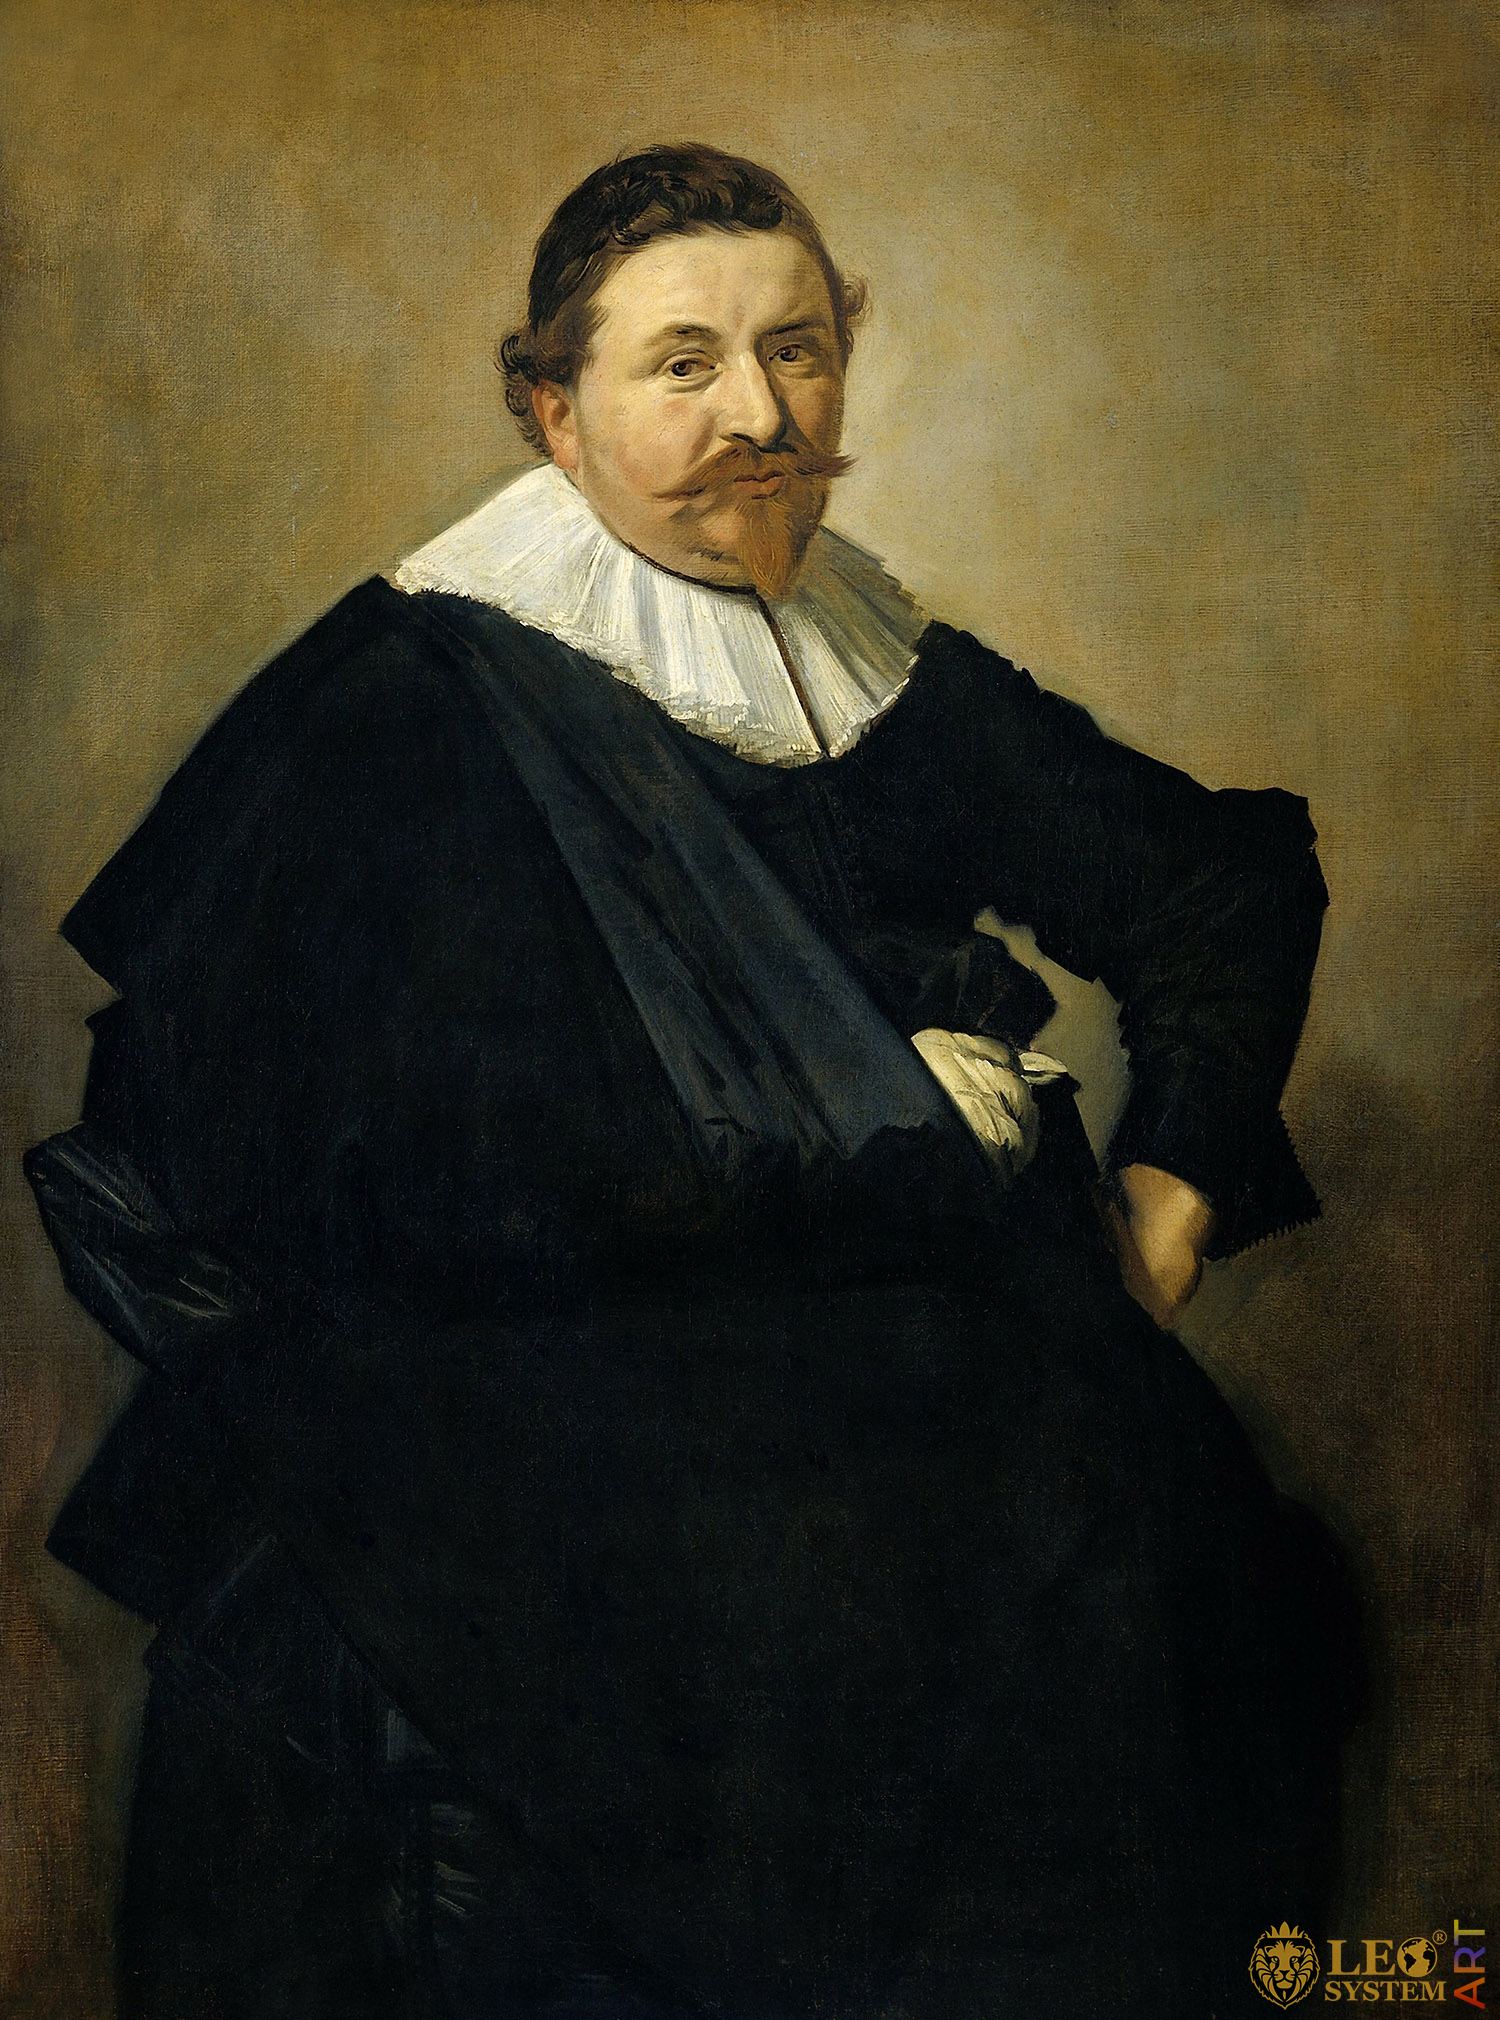 Portrait of Lucas de Clercq, Painter: Frans Hals, 1635, Dutch Painting